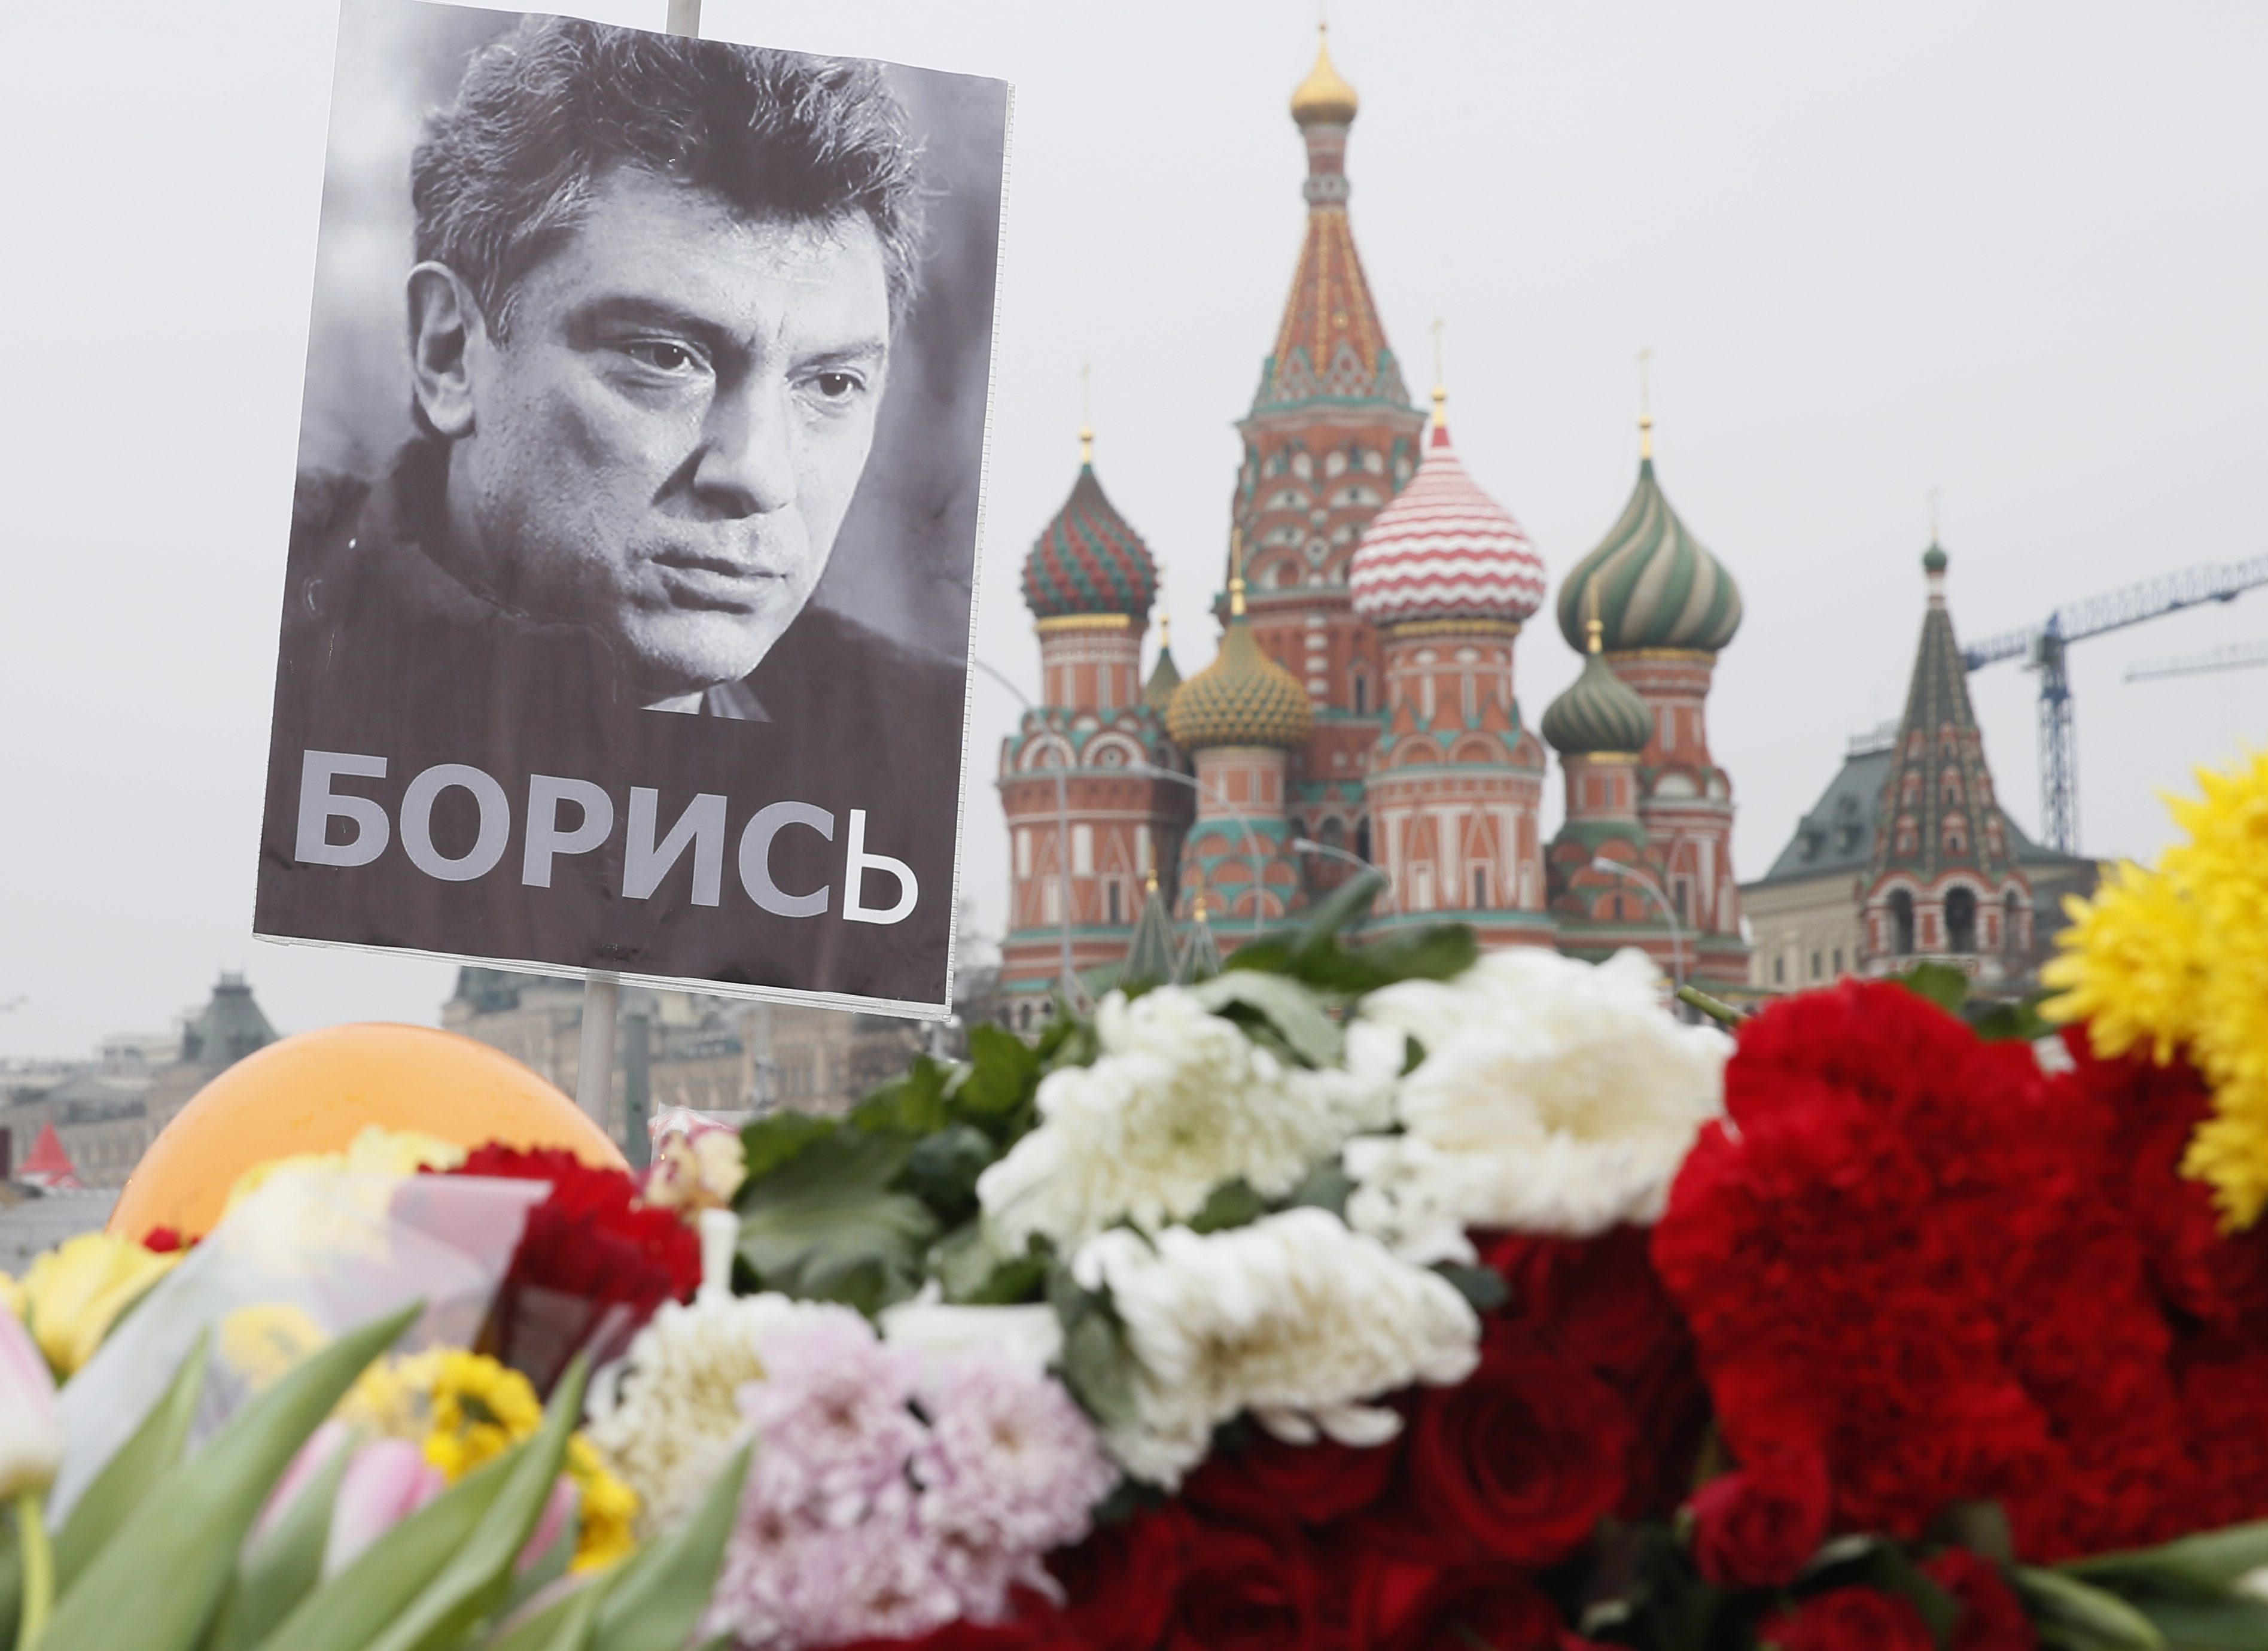 «Δεν είδα τον δολοφόνο» λέει στα μέσα ενημέρωσης η σύντροφος του Νεμτσόφ